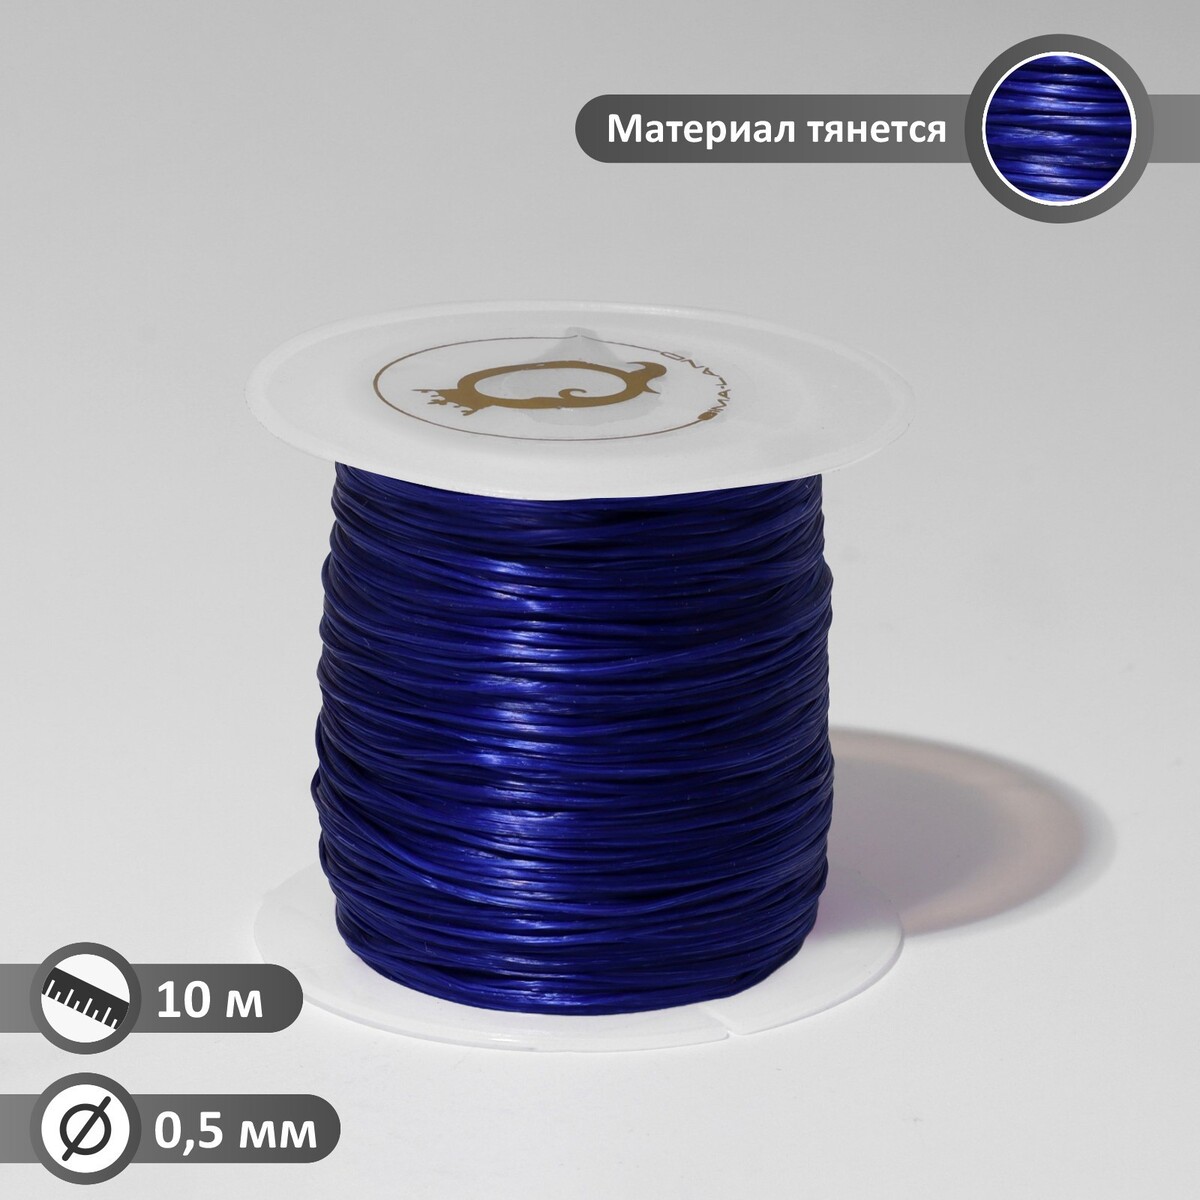 Нить силиконовая (резинка) d=0,5 мм, l=10 м (прочность 2250 денье), цвет синий неоновая нить cartage для подсветки салона адаптер питания 12 в 5 м синий